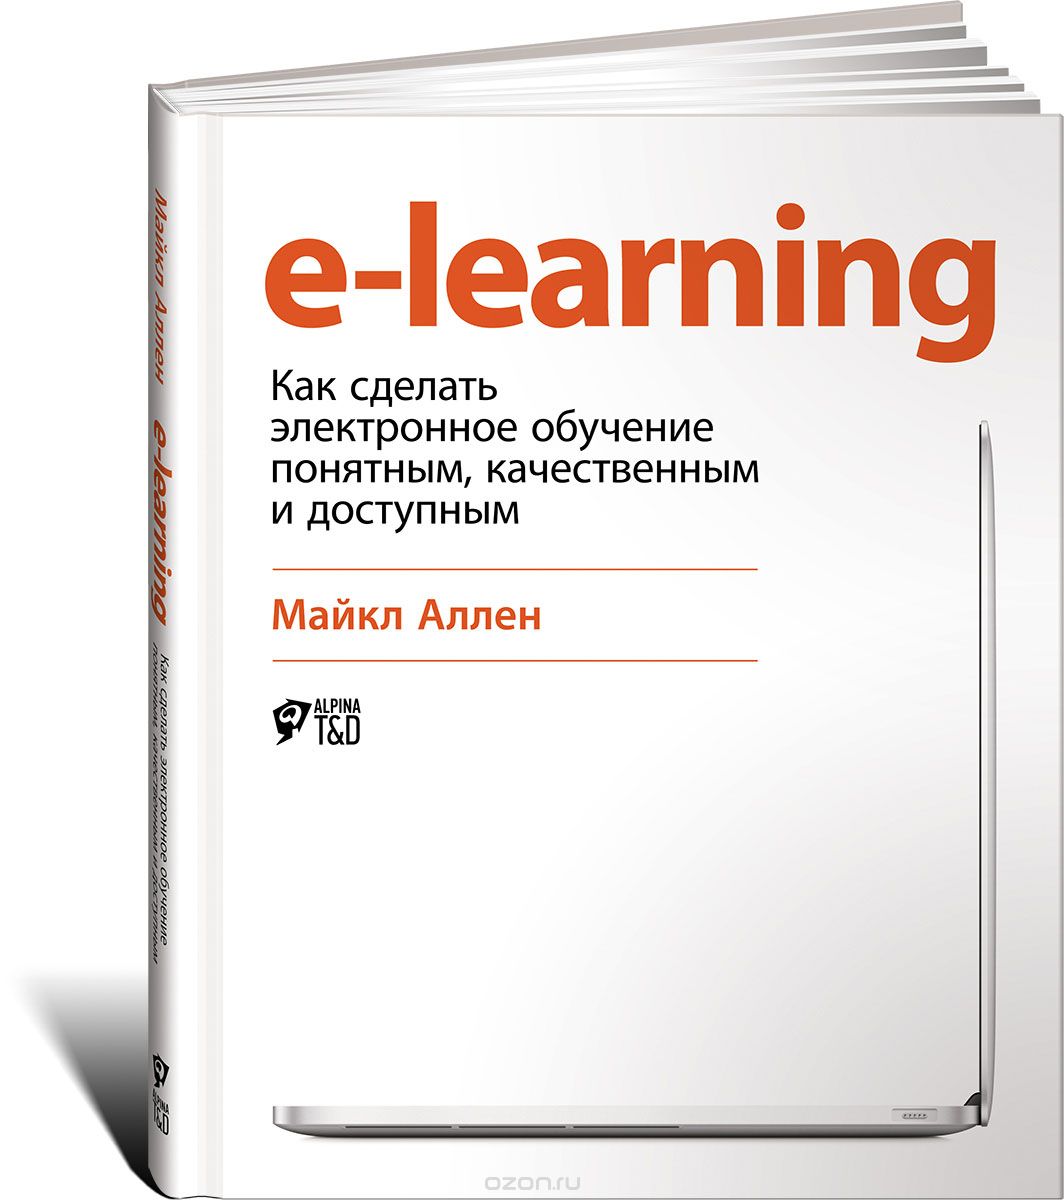 E-Learning: Как сделать электронное обучение понятным, качественным и доступным, Майкл Аллен